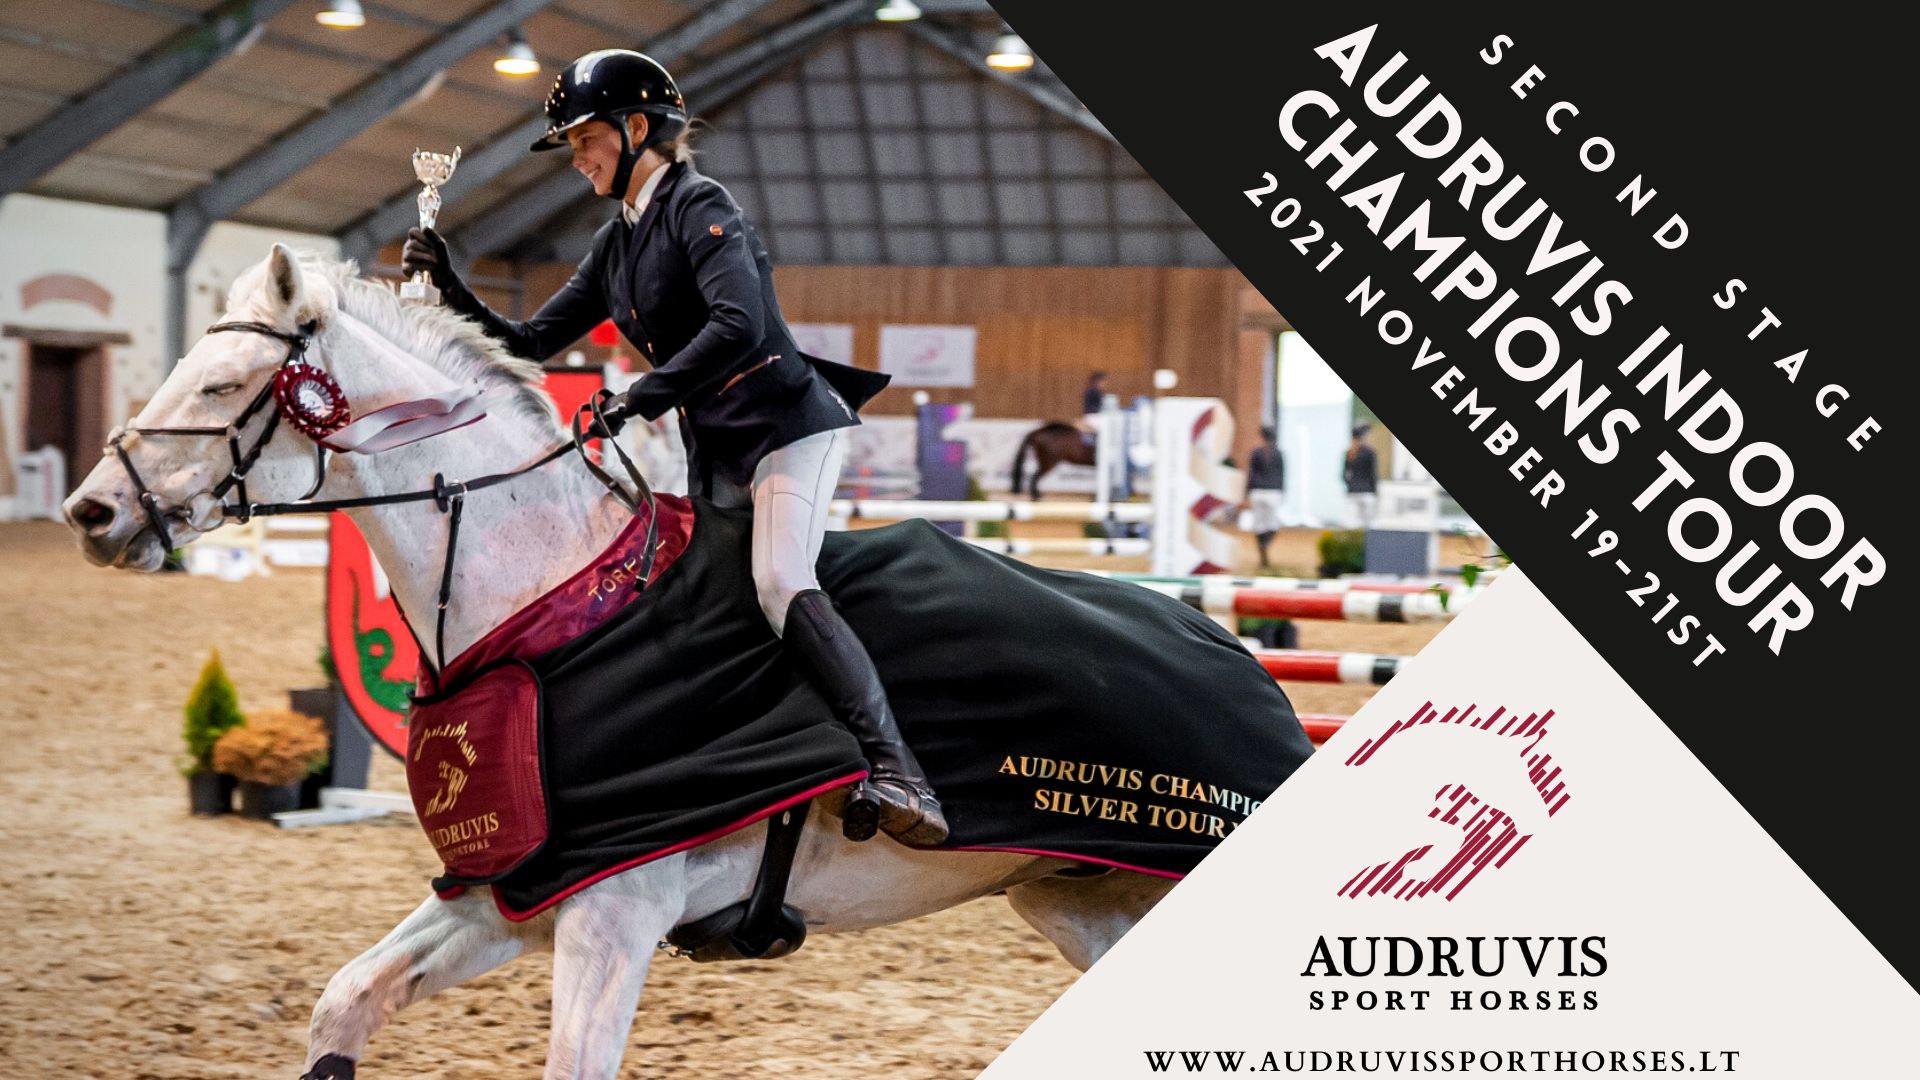 Audruvis Indoor Champions Tour 2021 II etapas Audruvis Sport Horses picture image